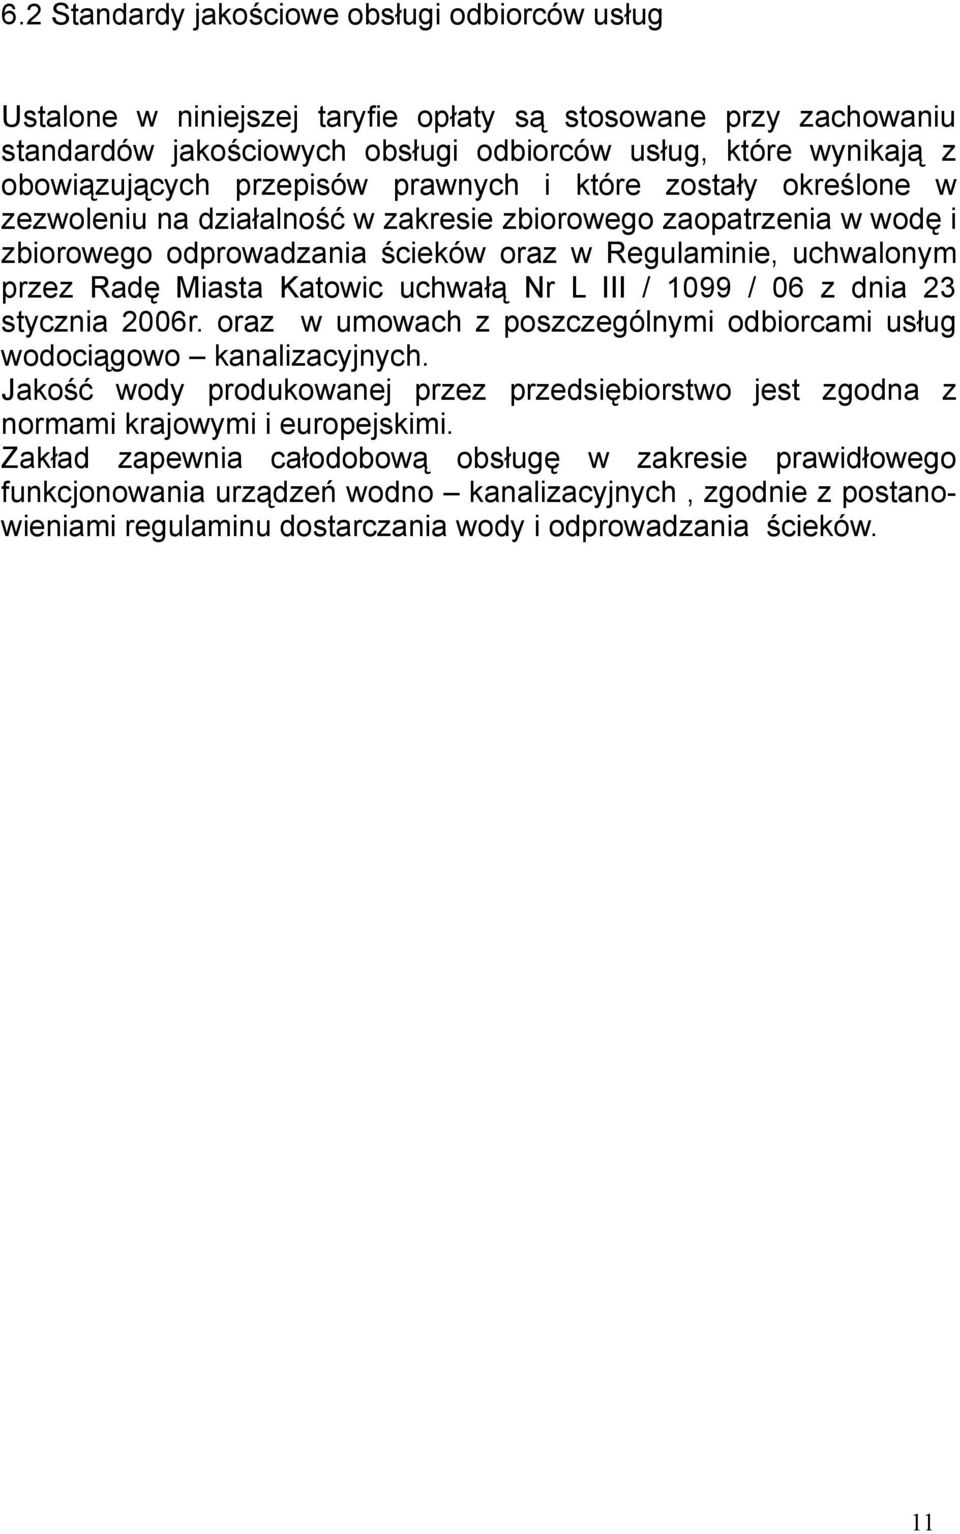 Katowic uchwałą Nr L III / 1099 / 06 z dnia 23 stycznia 2006r. oraz w umowach z poszczególnymi odbiorcami usług wodociągowo kanalizacyjnych.